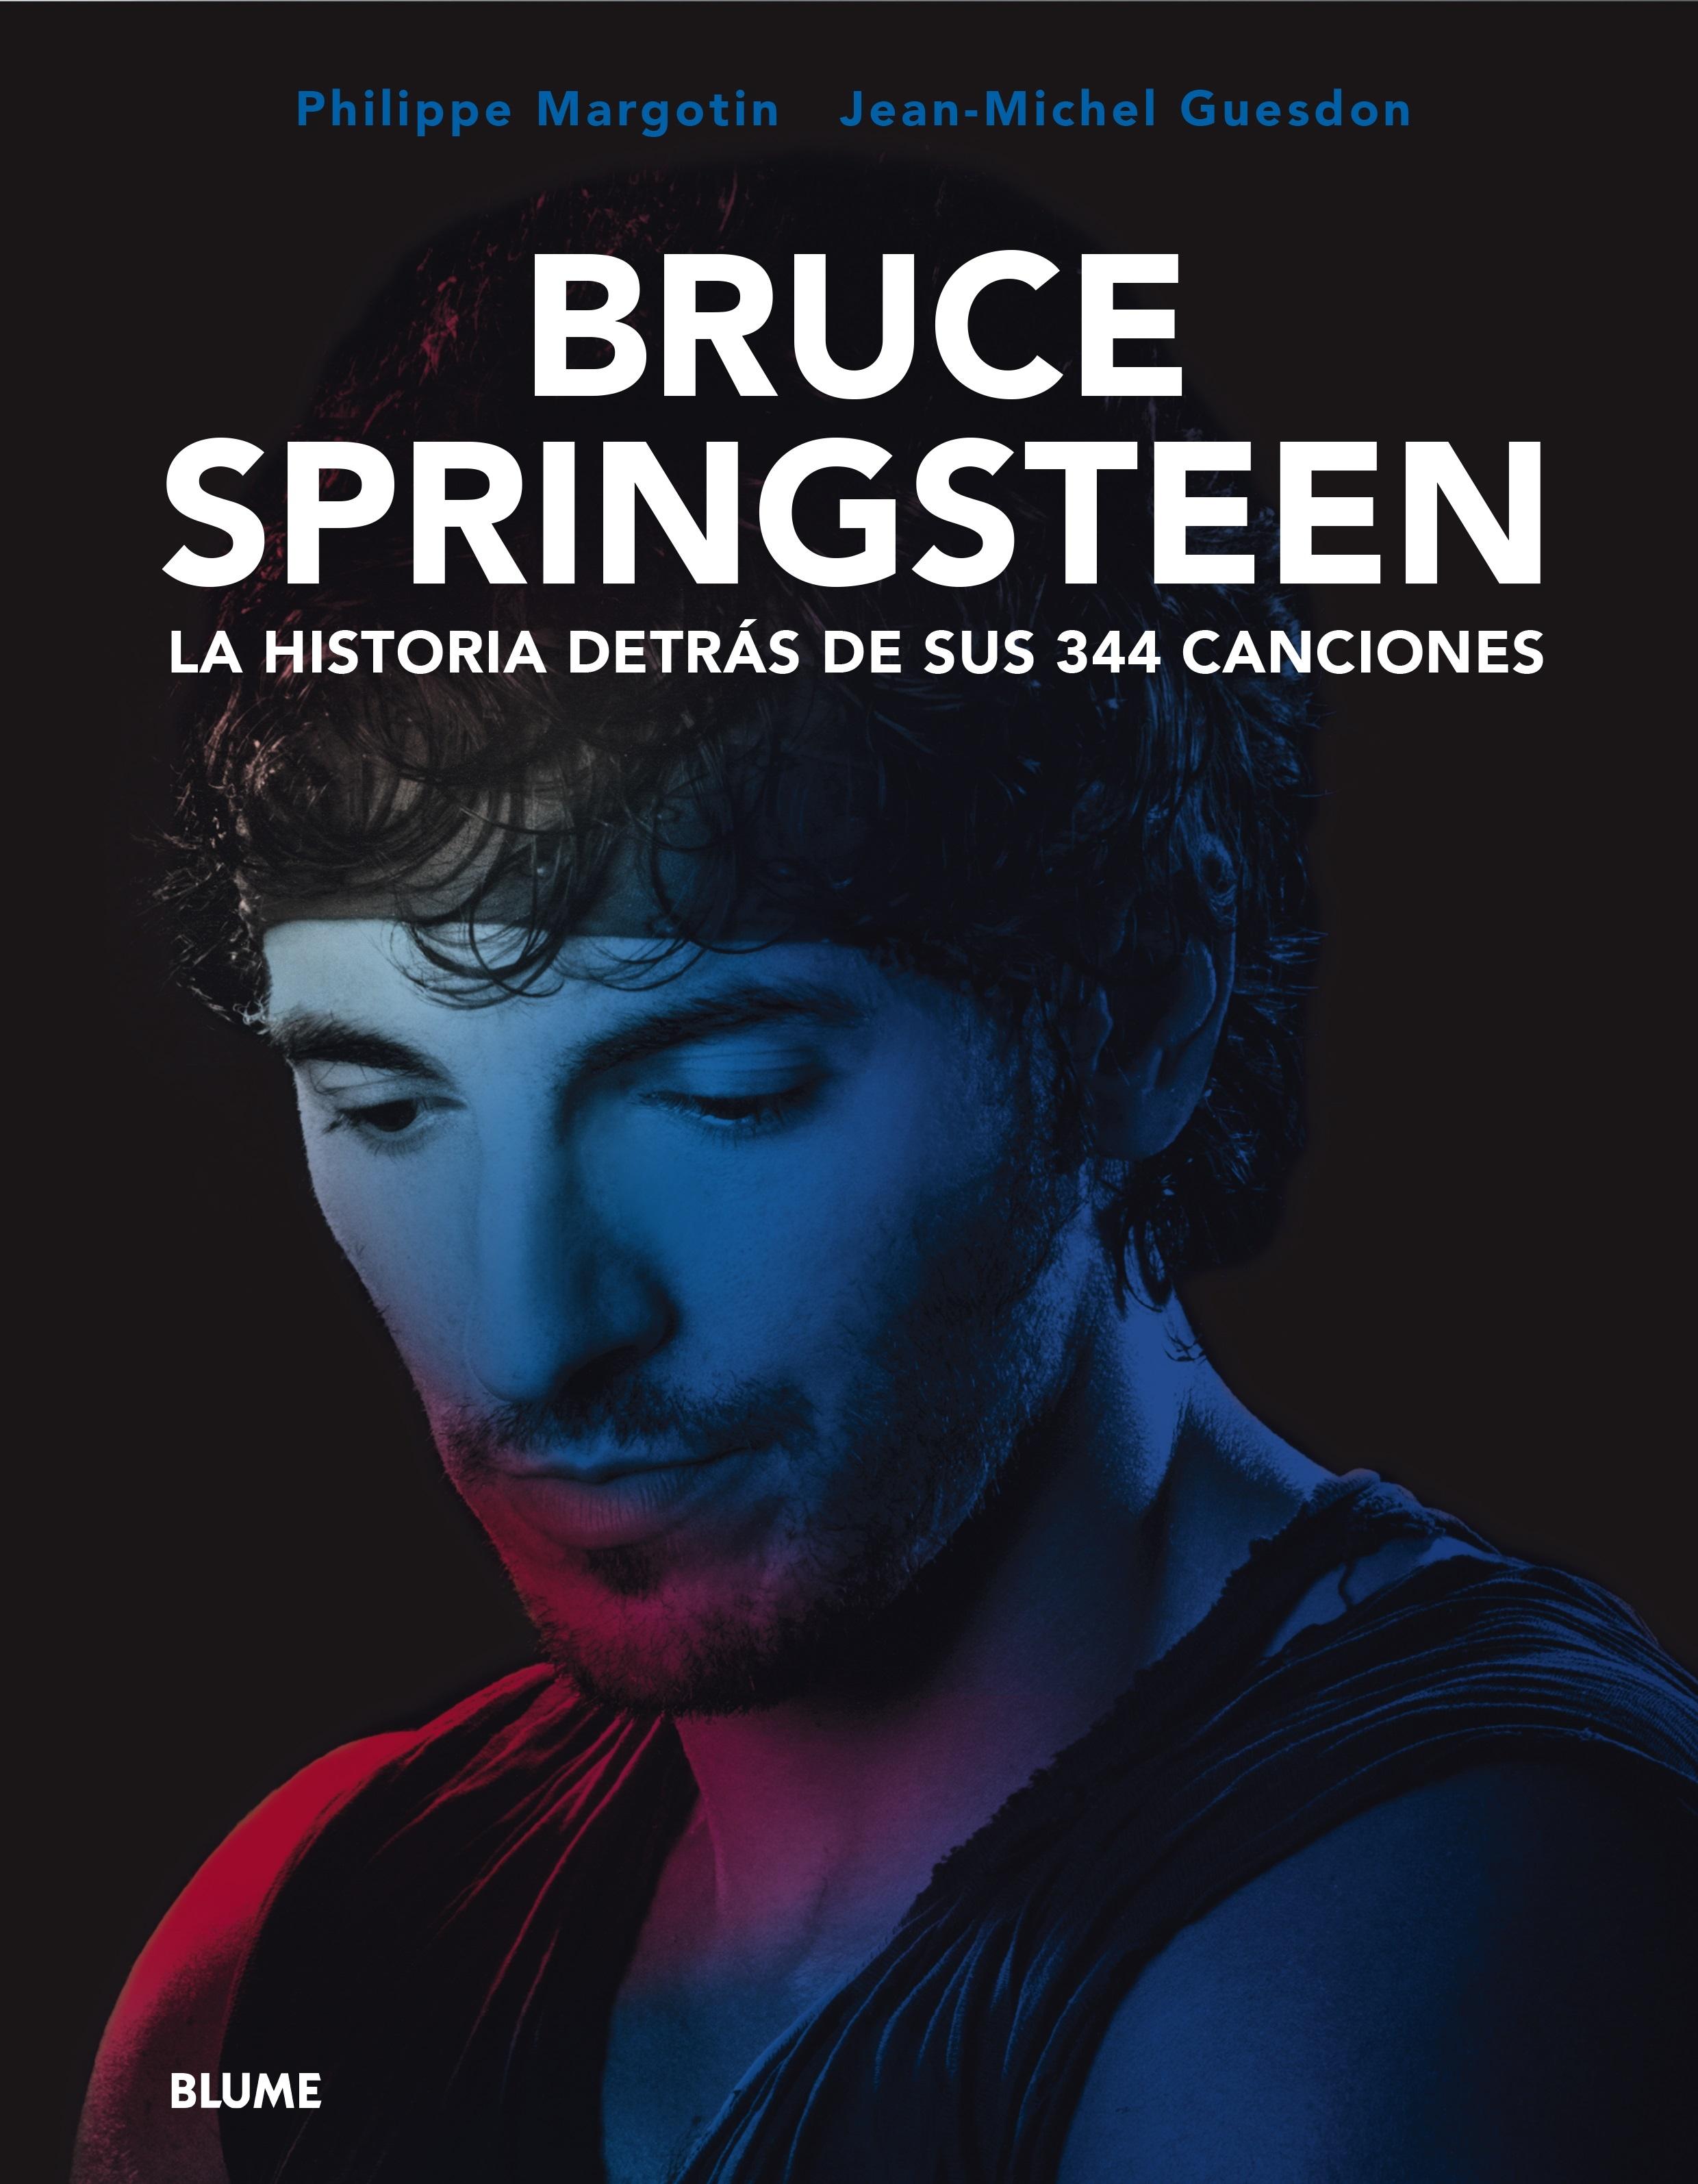 Bruce Springsteen "La Historia Detrás de sus 344 Canciones". 